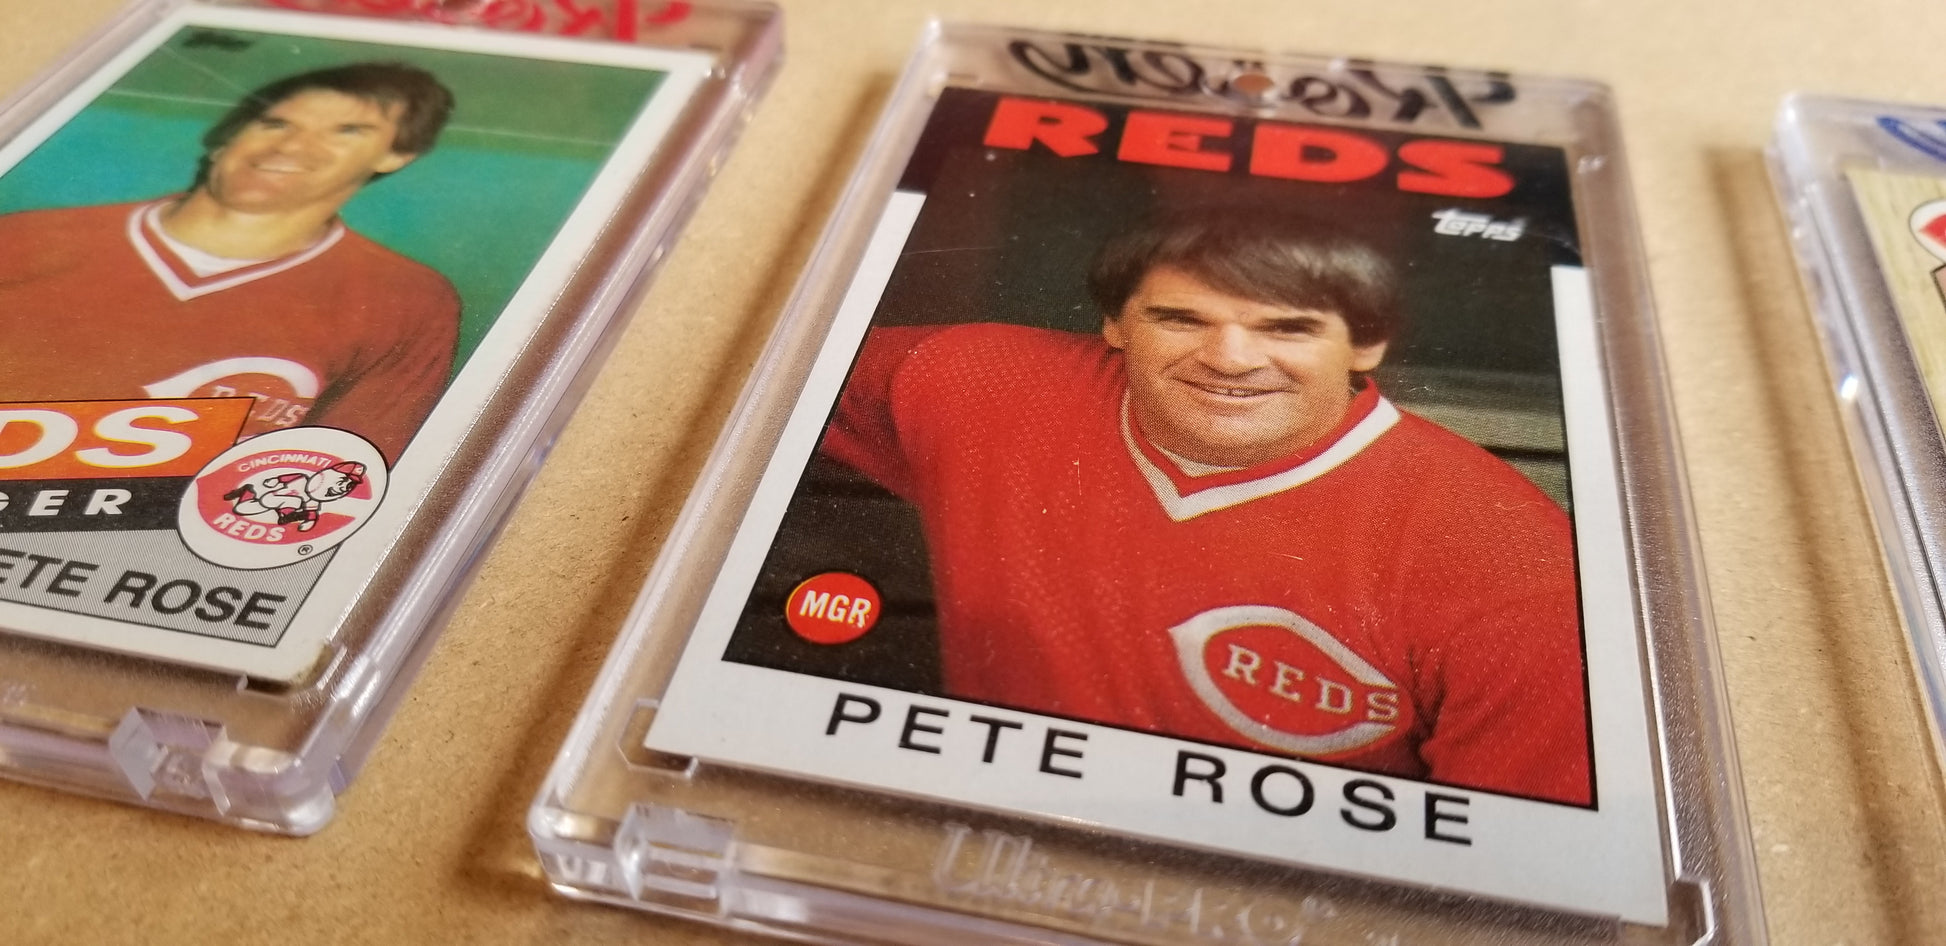 Baseball card art by Matthew Lee Rosen (aka Matthew Rosen) - Gum Stick Collector Cards - Pete Rose Manager (Asterisks)